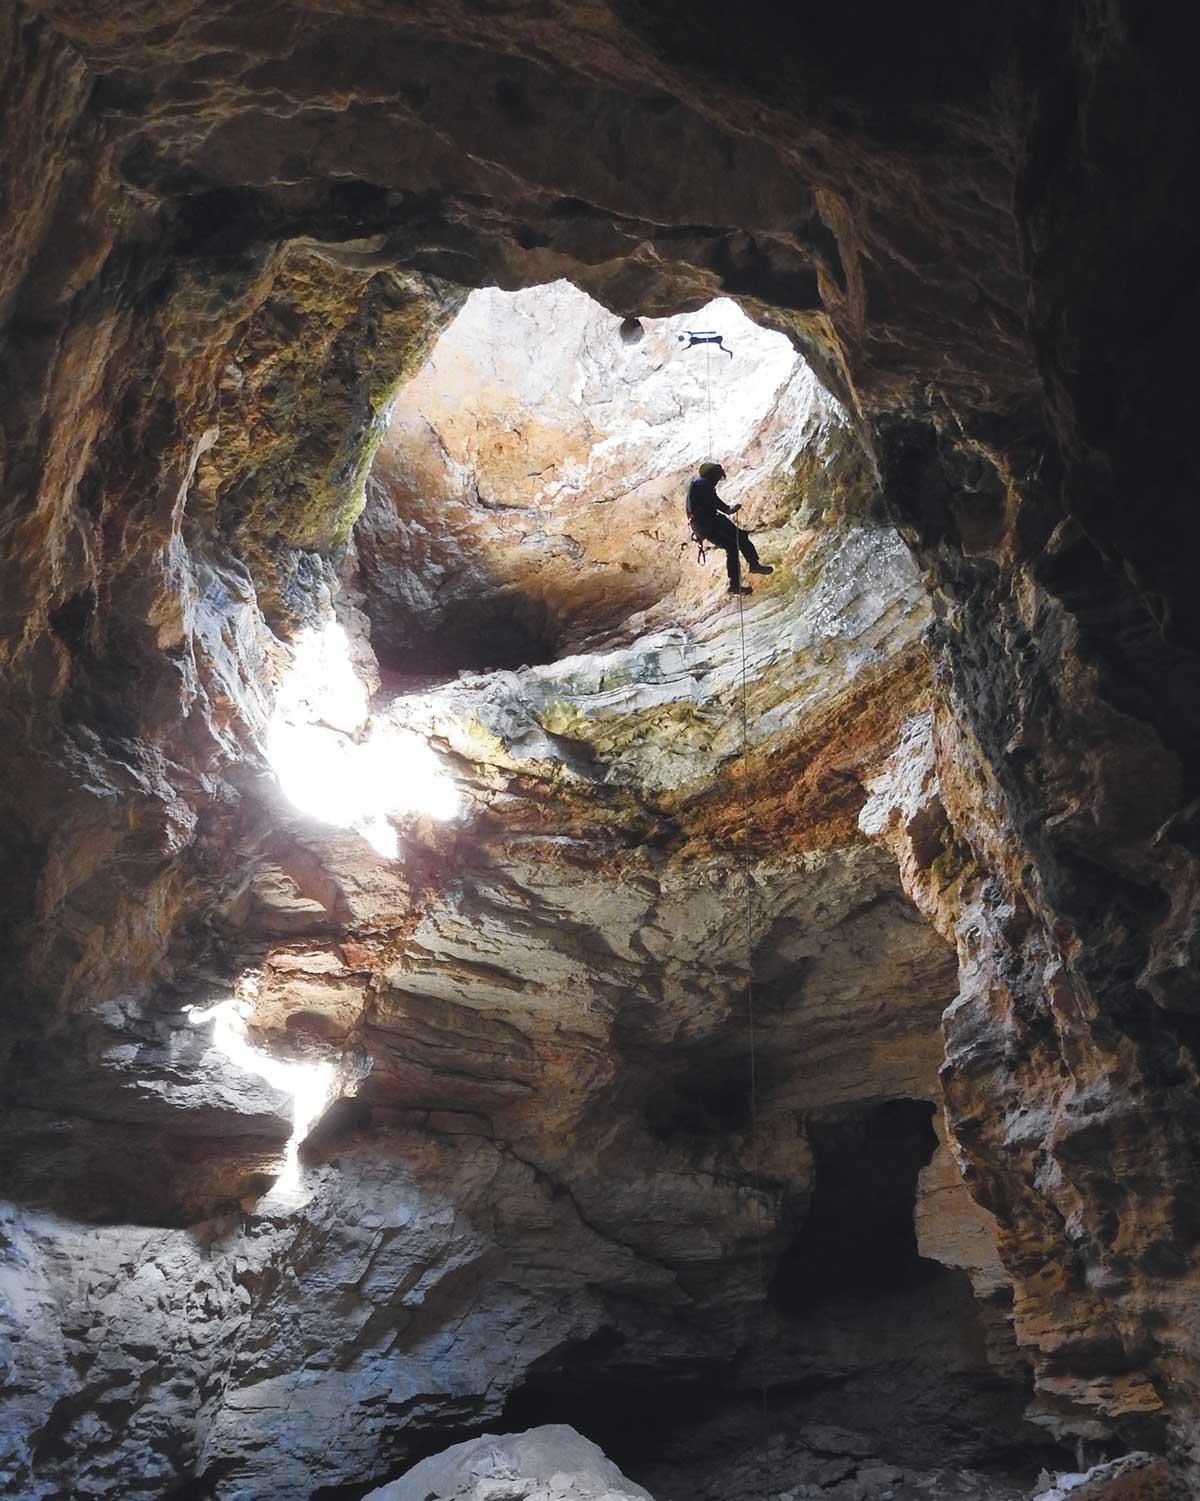 Person descending into a cave